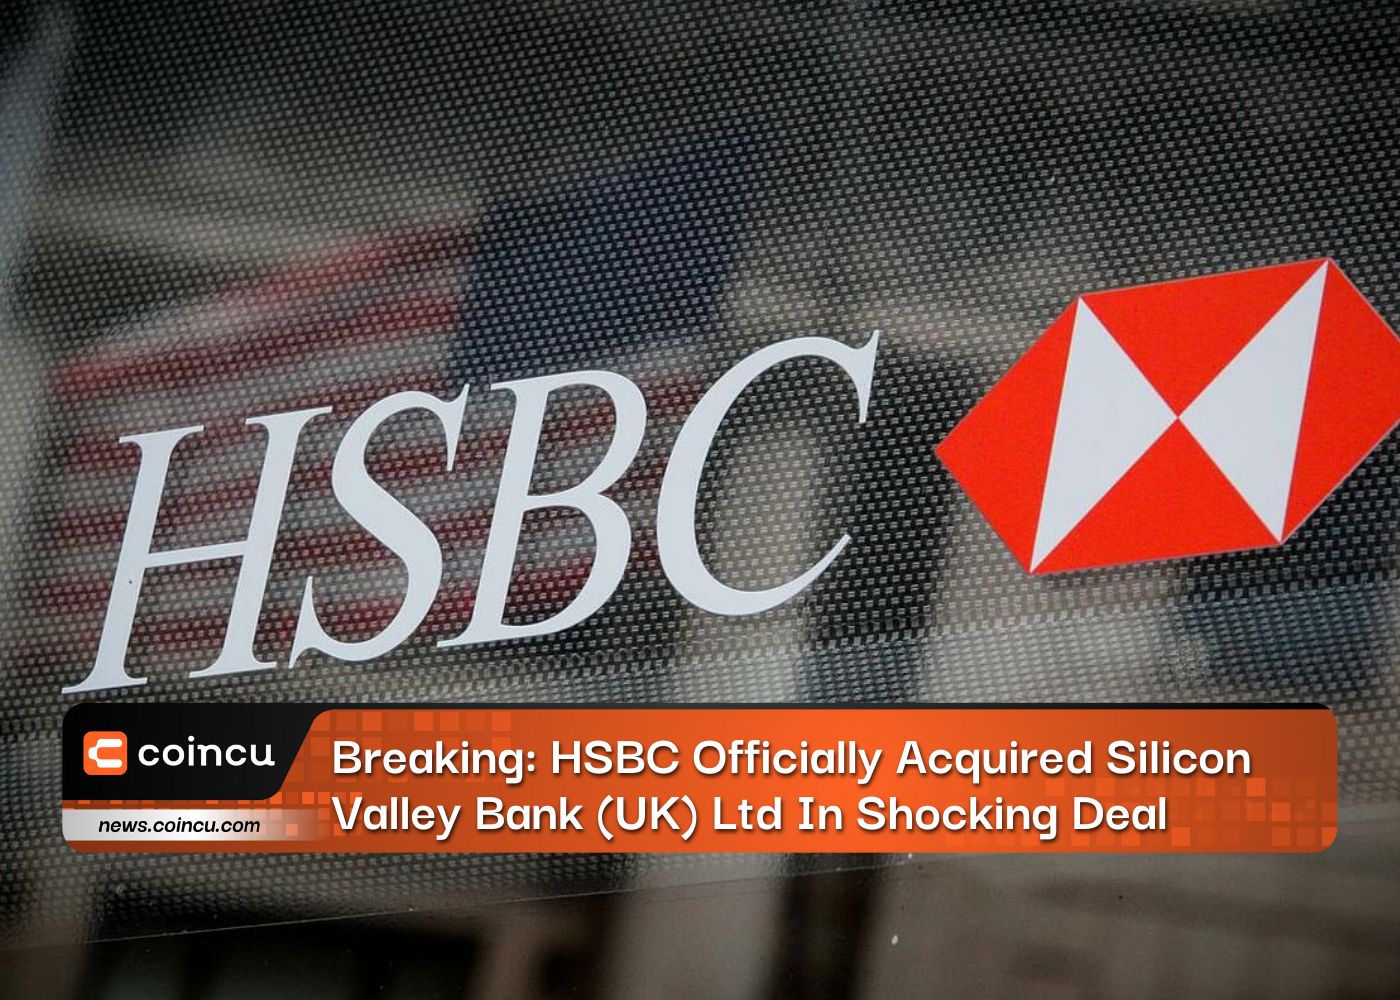 Quebra: HSBC adquiriu oficialmente o Silicon Valley Bank (UK) Ltd em um acordo chocante